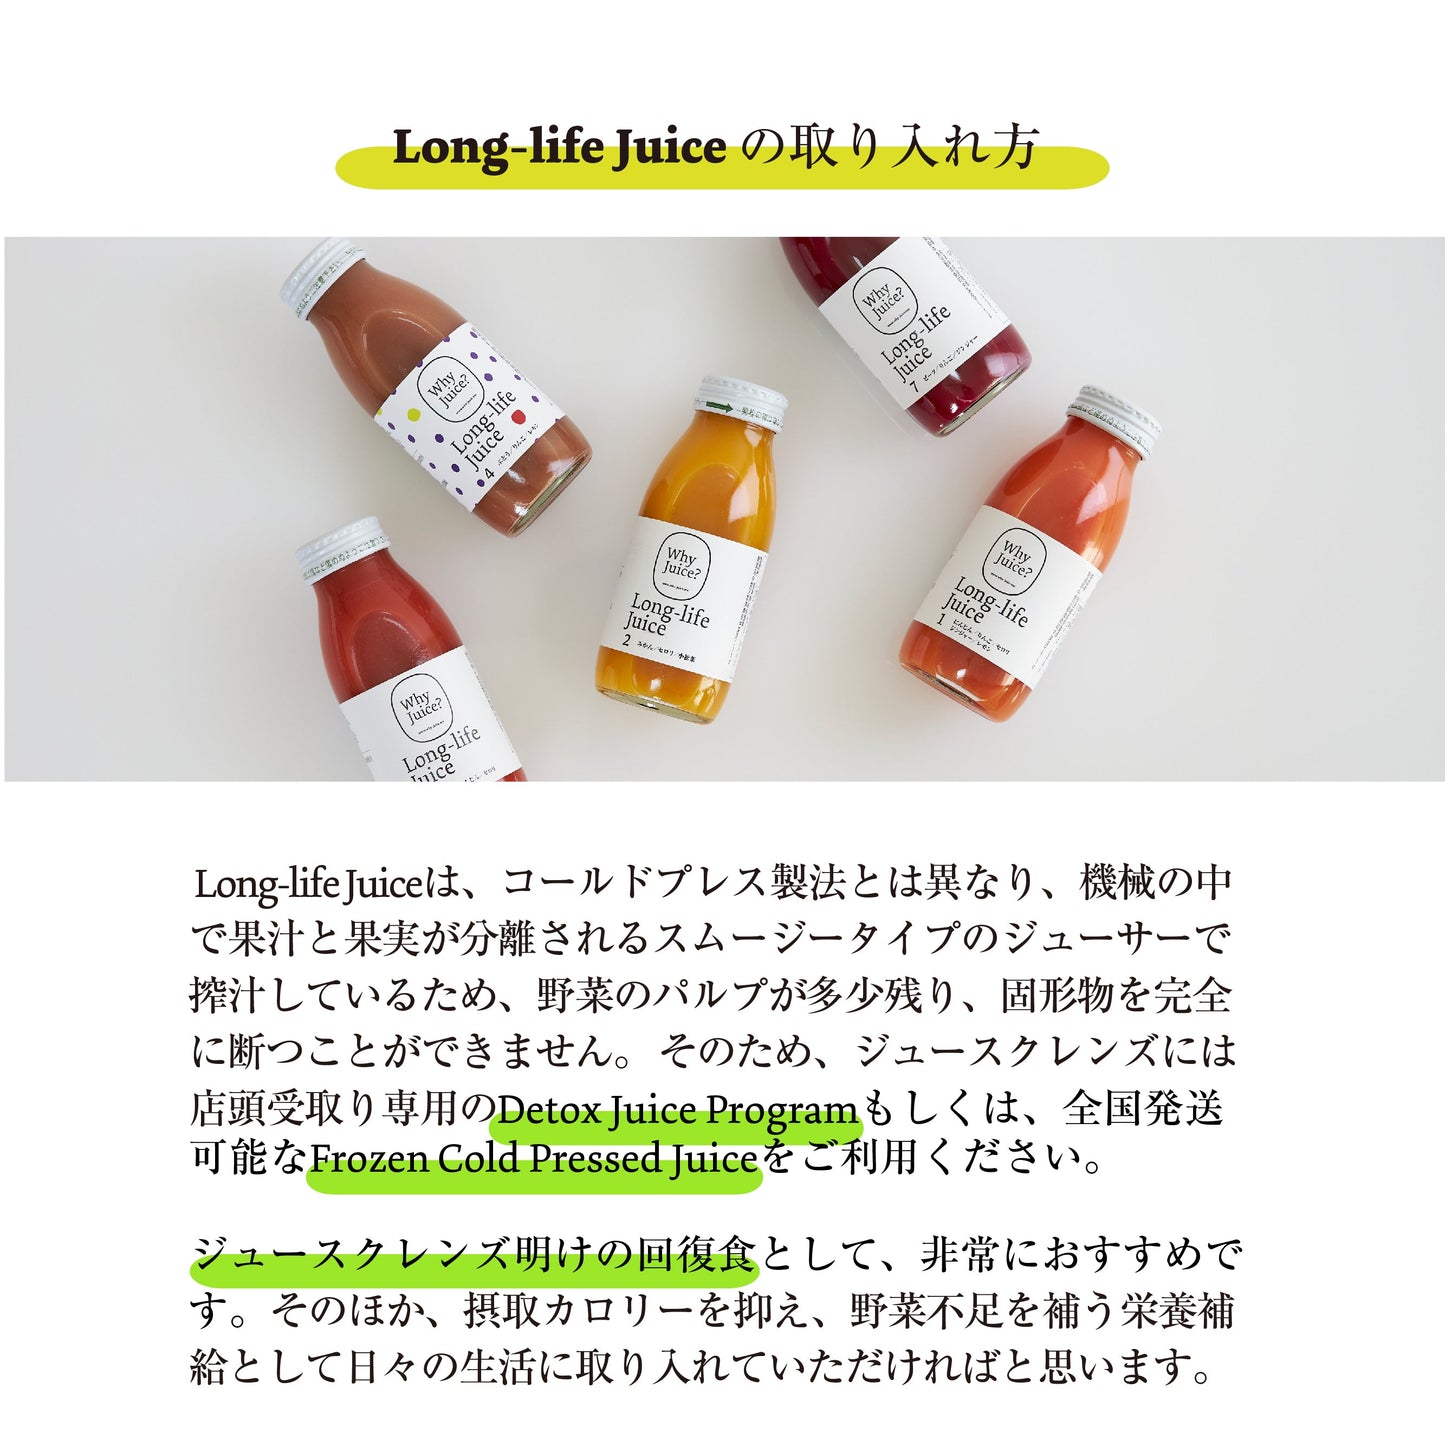 【無添加ジュース】Long-life Juice 12本ギフトボックス(4種類ミックスセット)